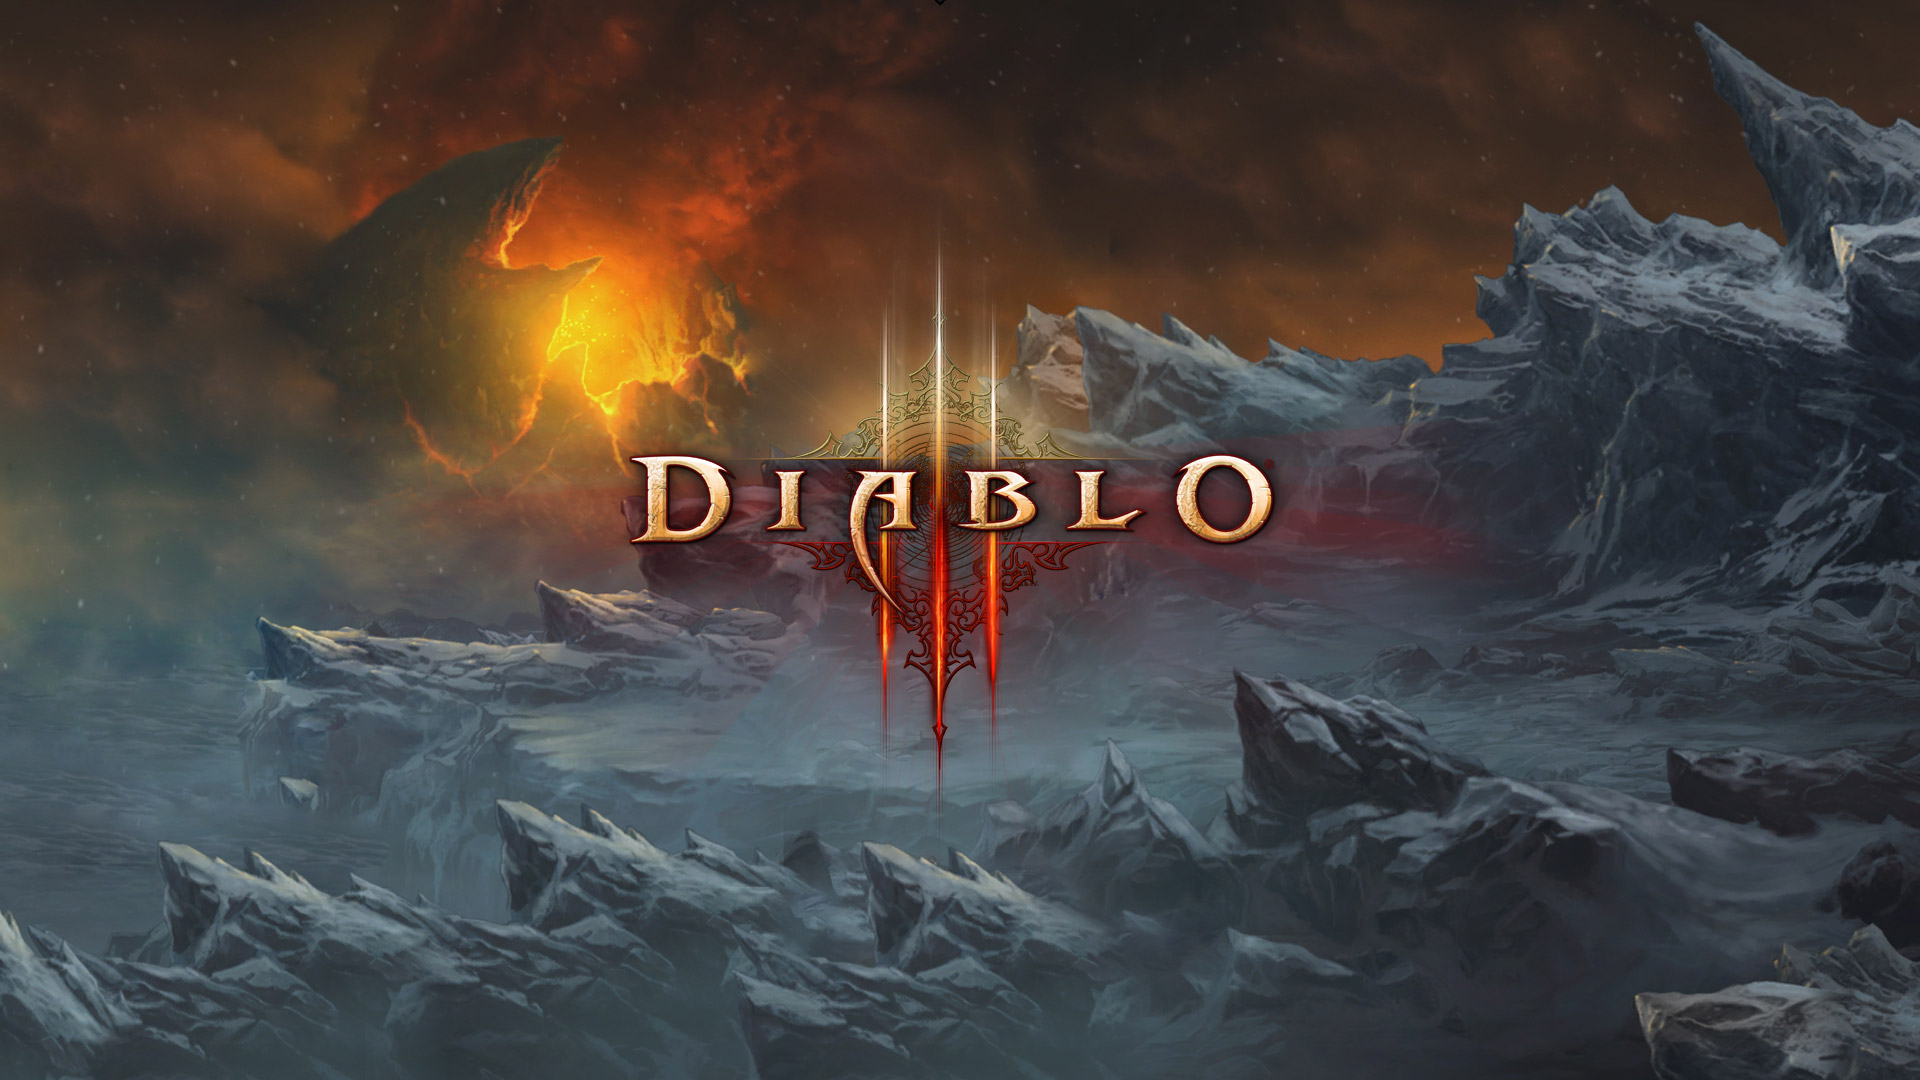 Diablo III Wallpaper in 1920x1080